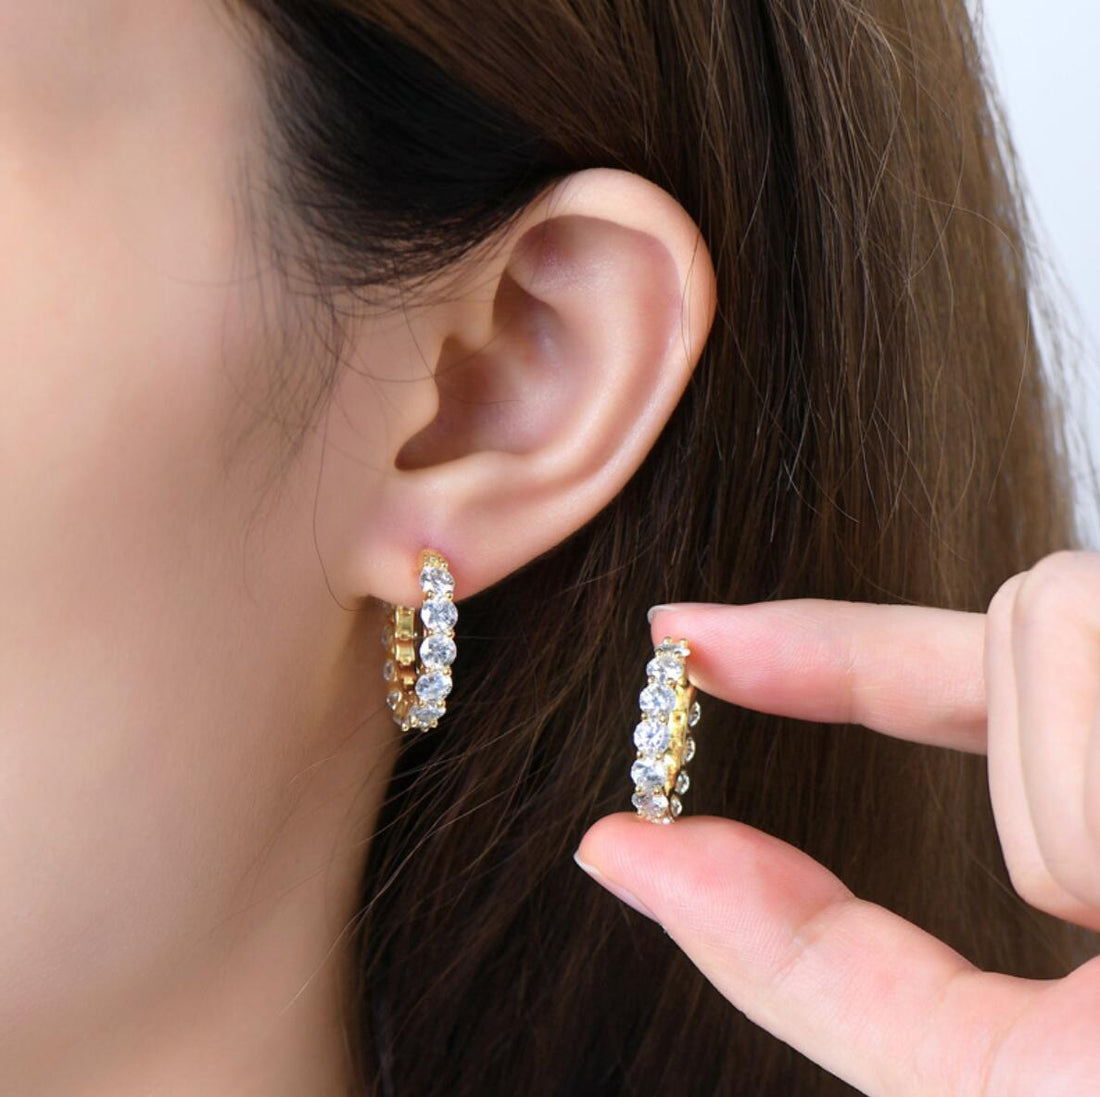 Adorn with Elegance: Diamond Hoop Earrings by Boujee Ice